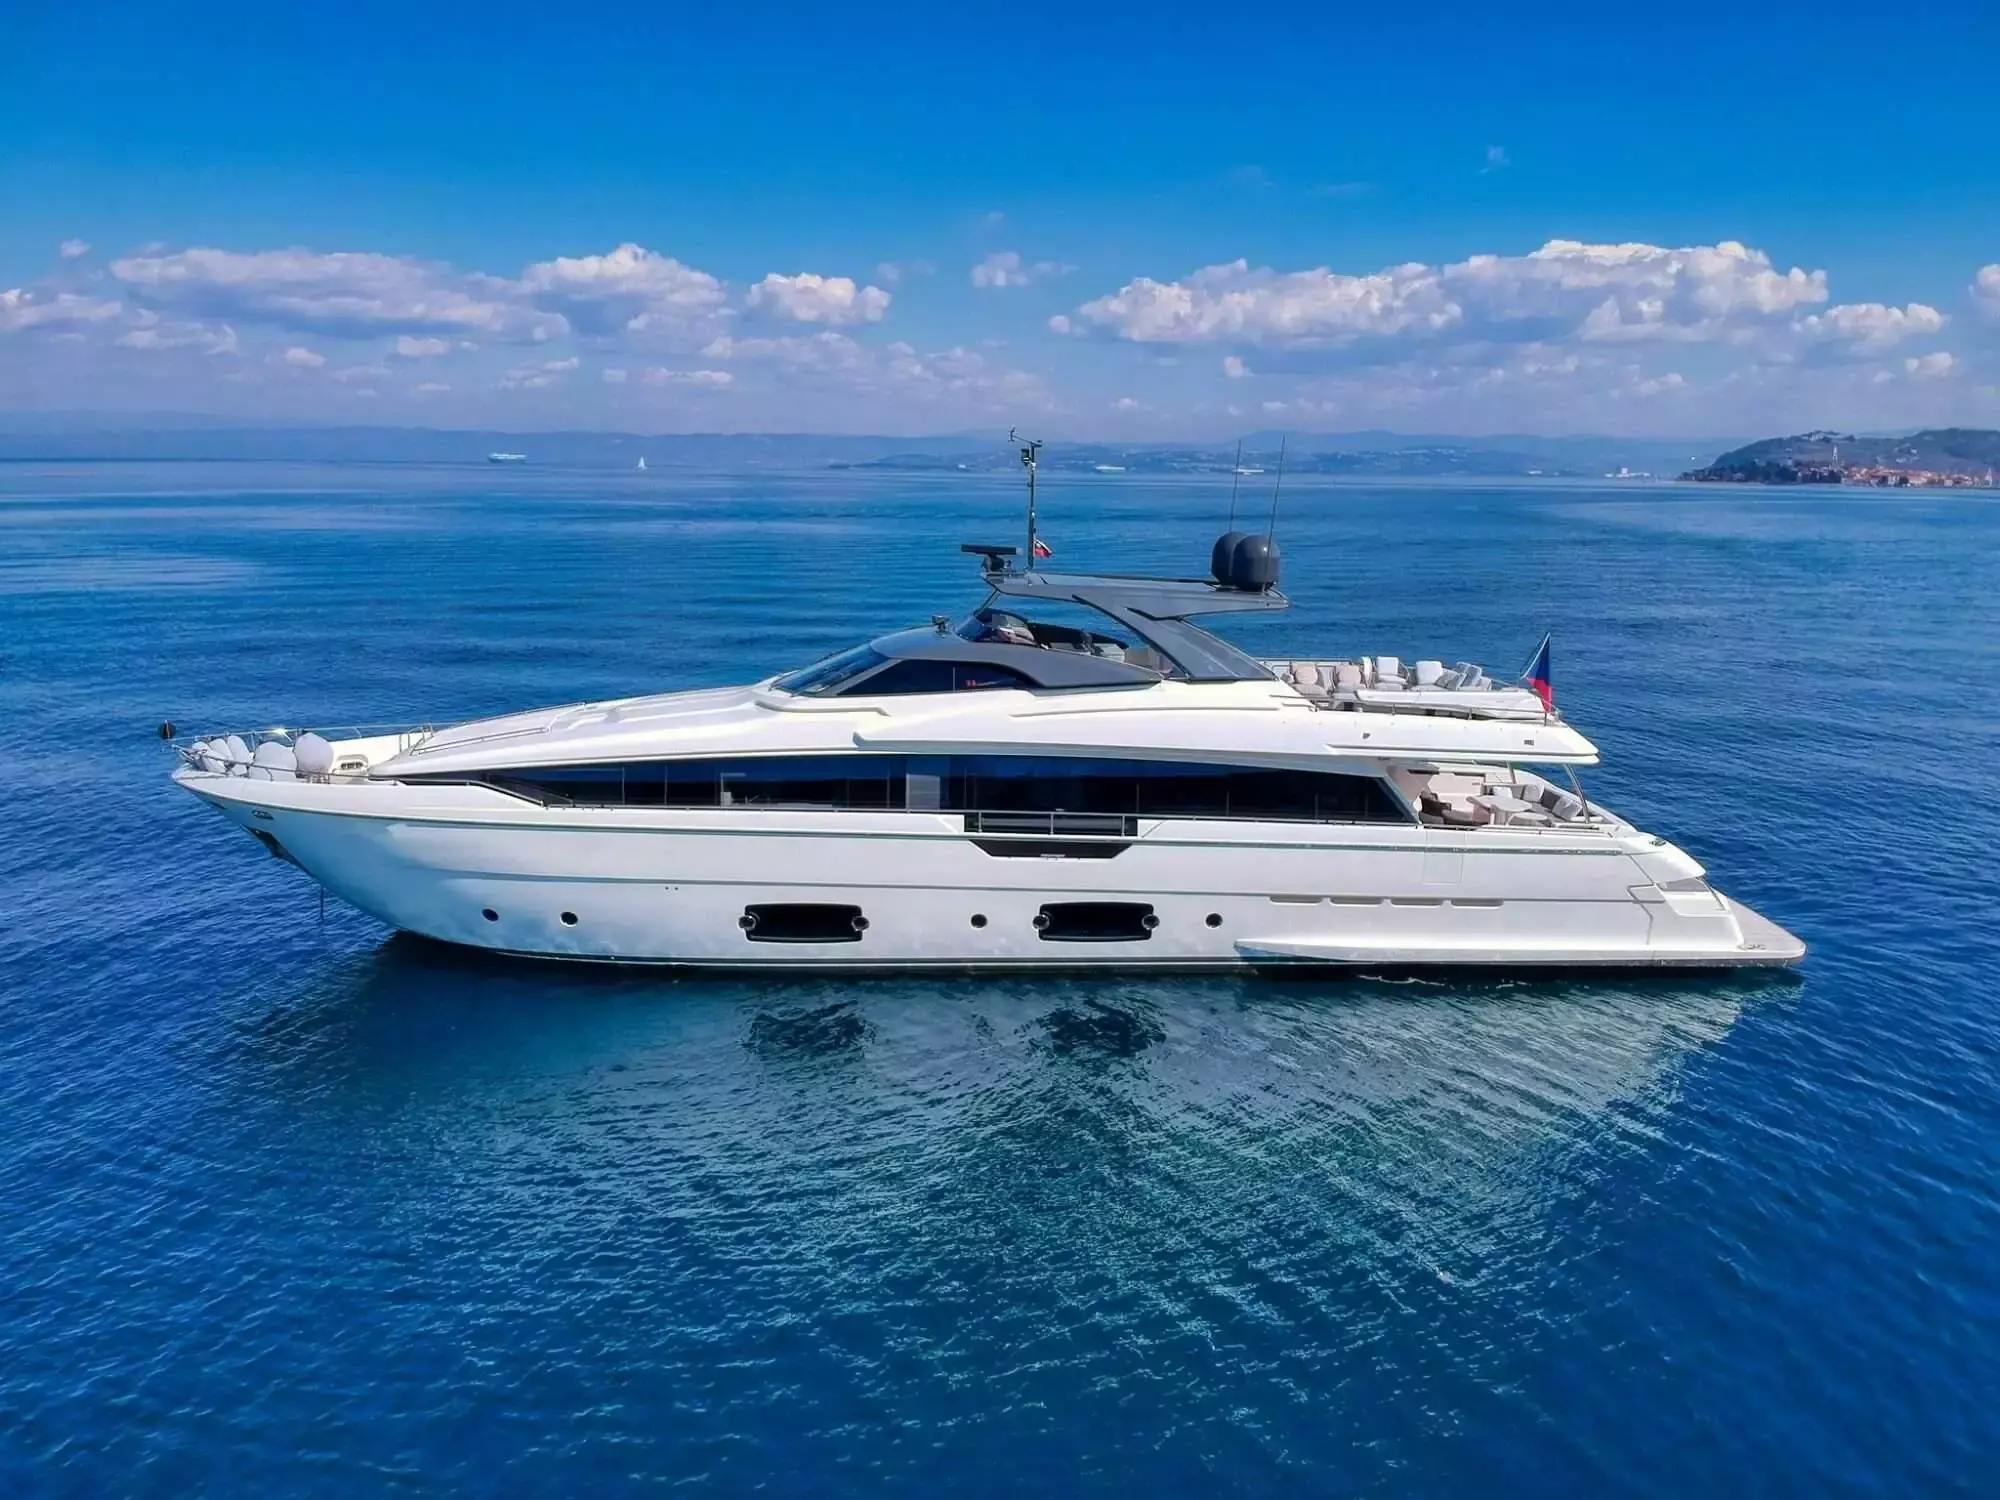 Damari by Ferretti - Special Offer for a private Superyacht Charter in La Spezia with a crew